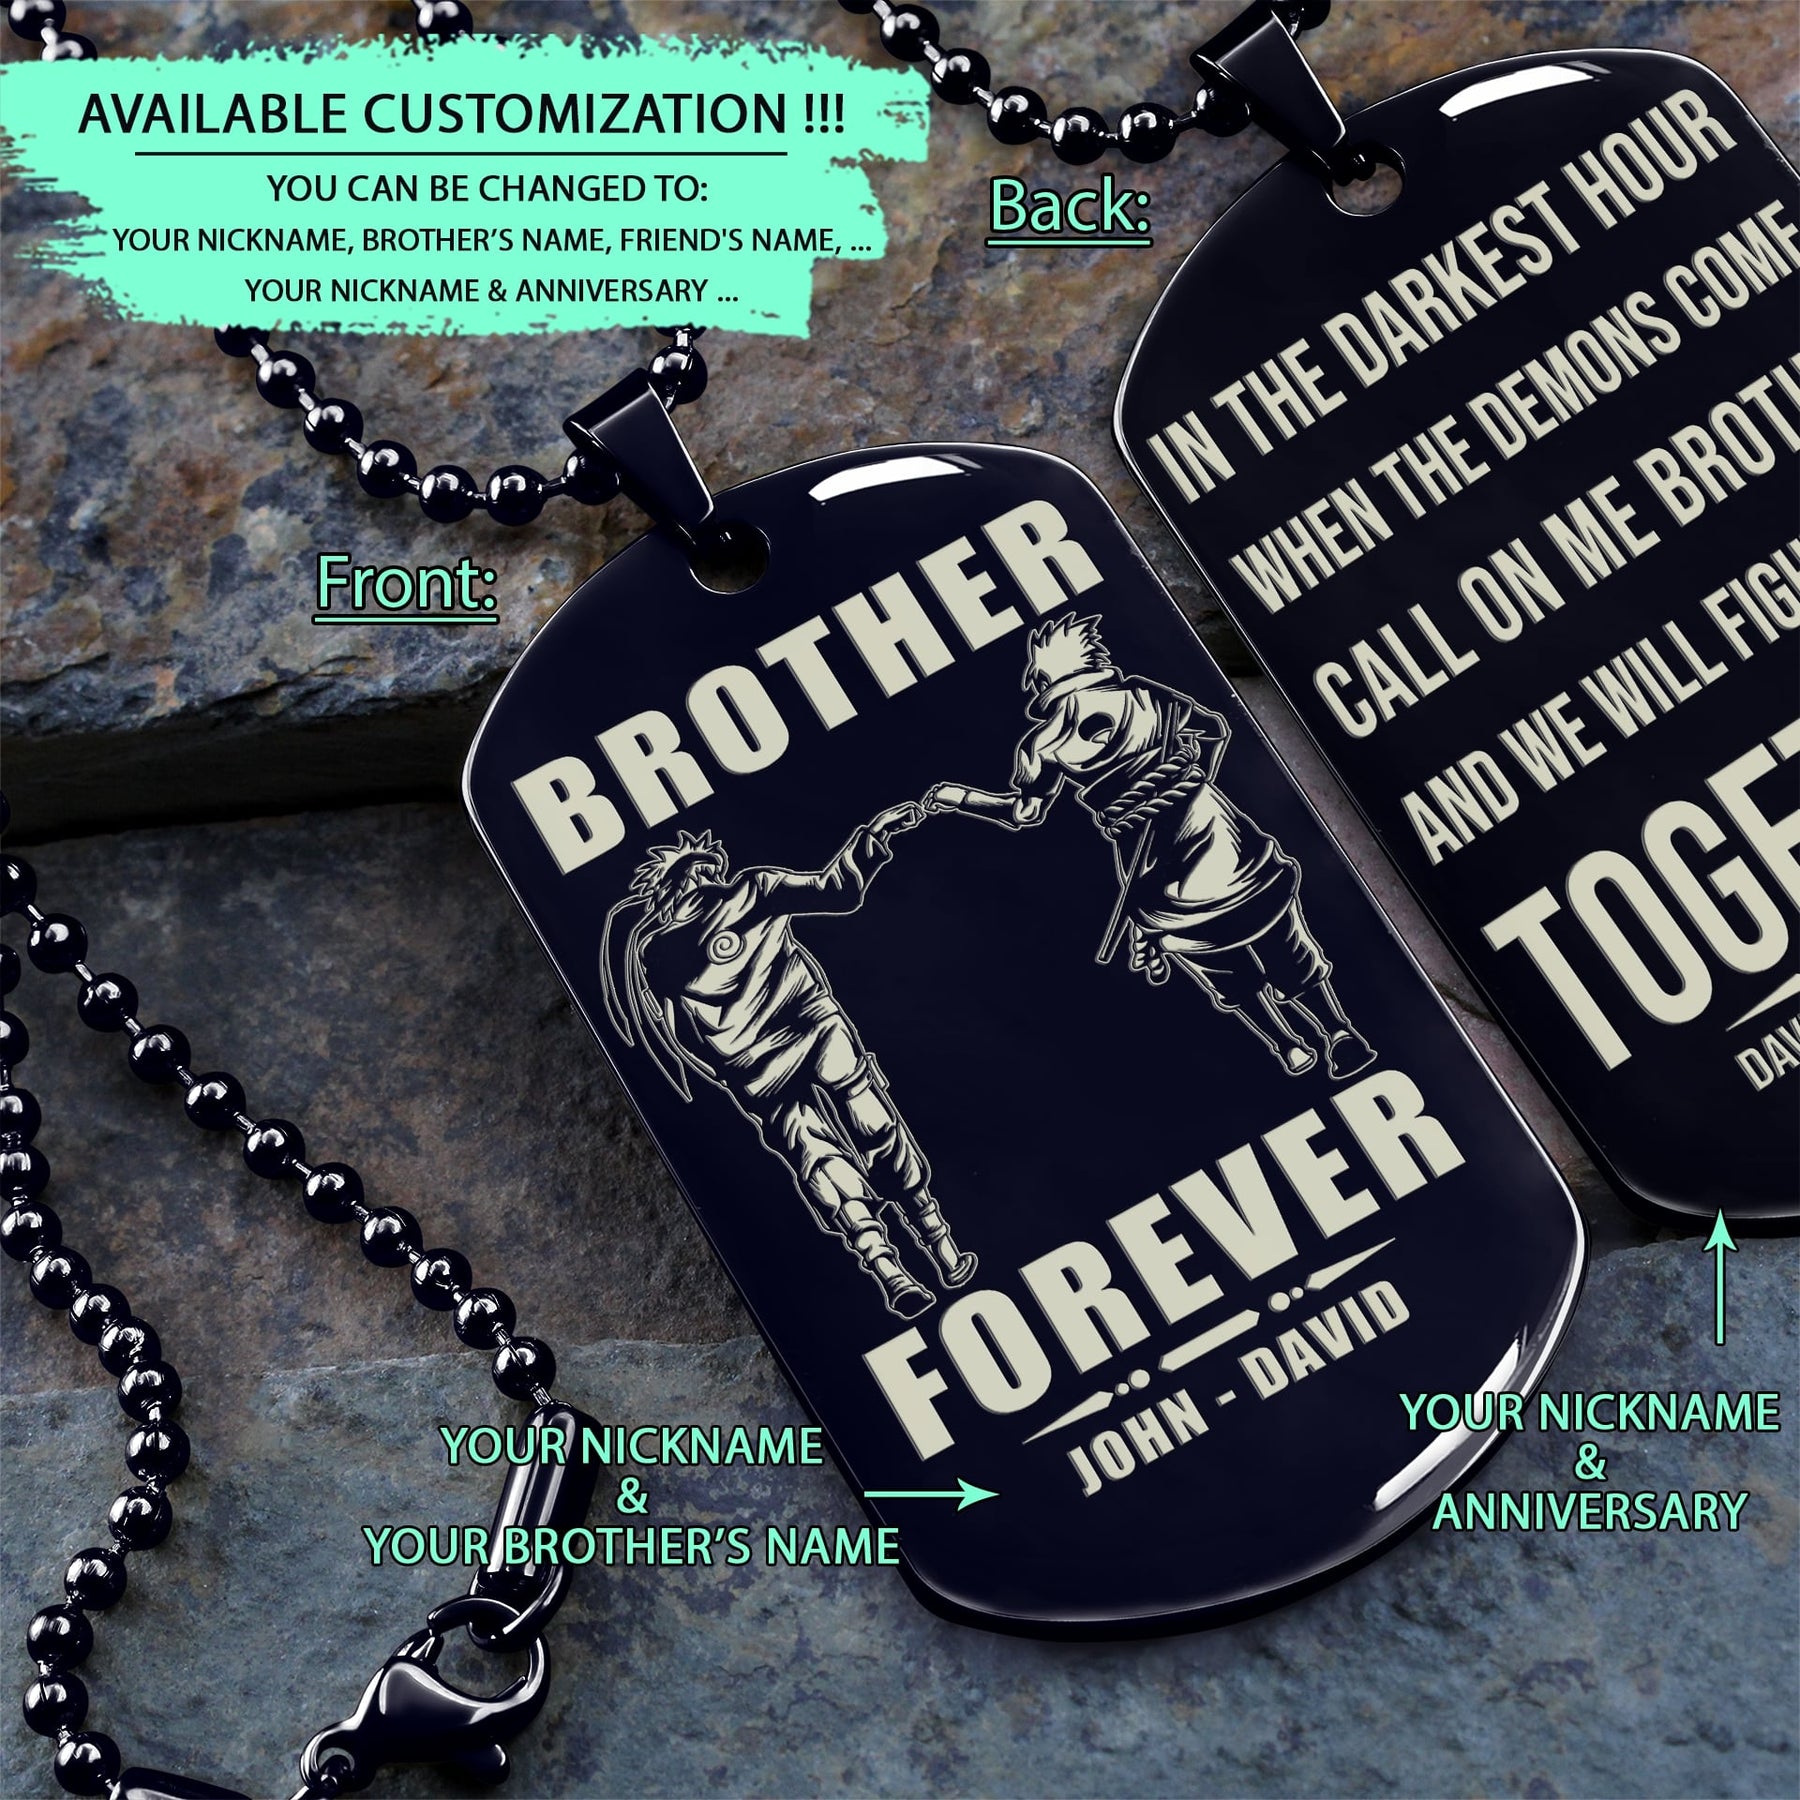 NAD025 - Brother Forever - Call On Me Brother - Uzumaki Naruto - Uchiha Sasuke - Naruto Dog Tag - Engrave Double Side Black Dog Tag